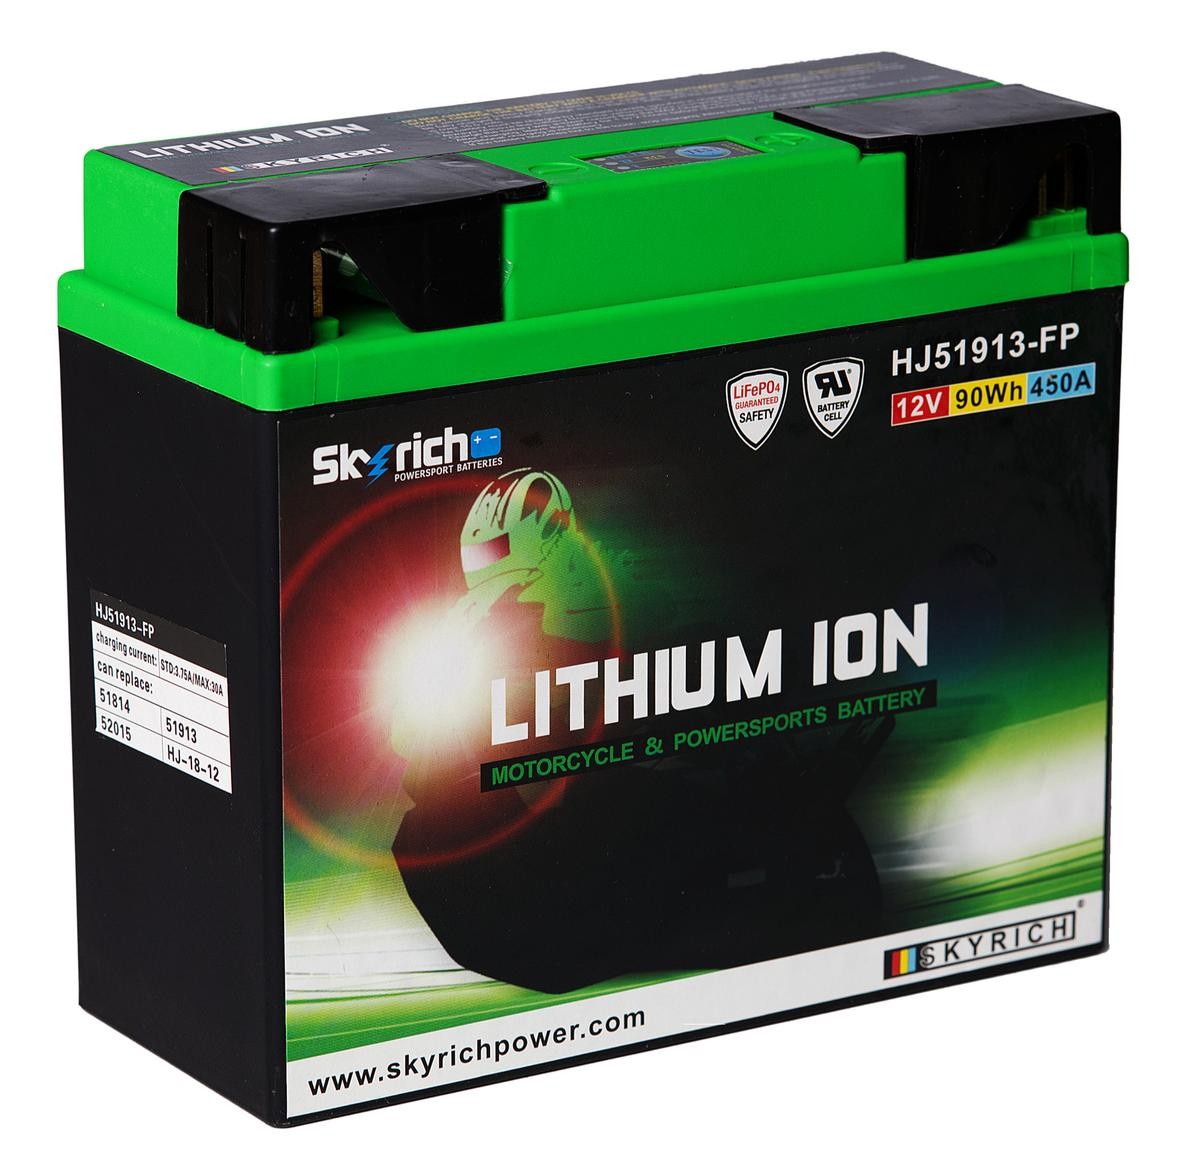 SKYRICH LITHIUM ION 12V 7,5Ah 450A N Li-Ion Battery Cold-test Current, EN: 450A, Voltage: 12V Starter battery HJ51913-FP buy